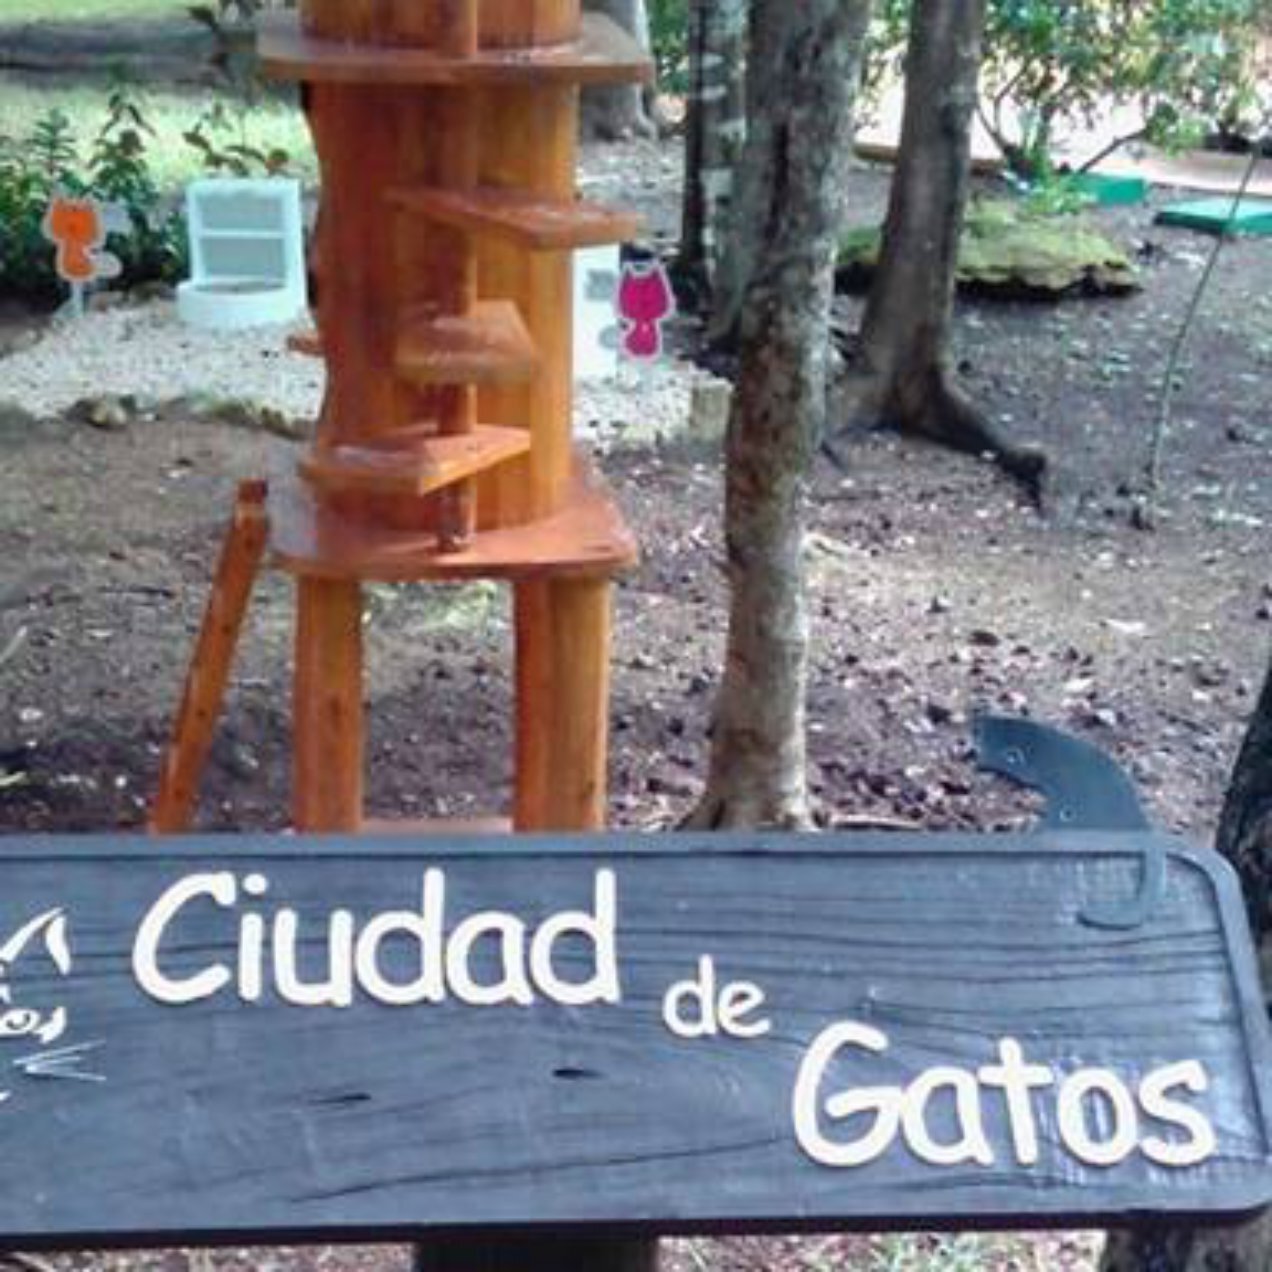 Introducing Cat City at Sandos Playacar